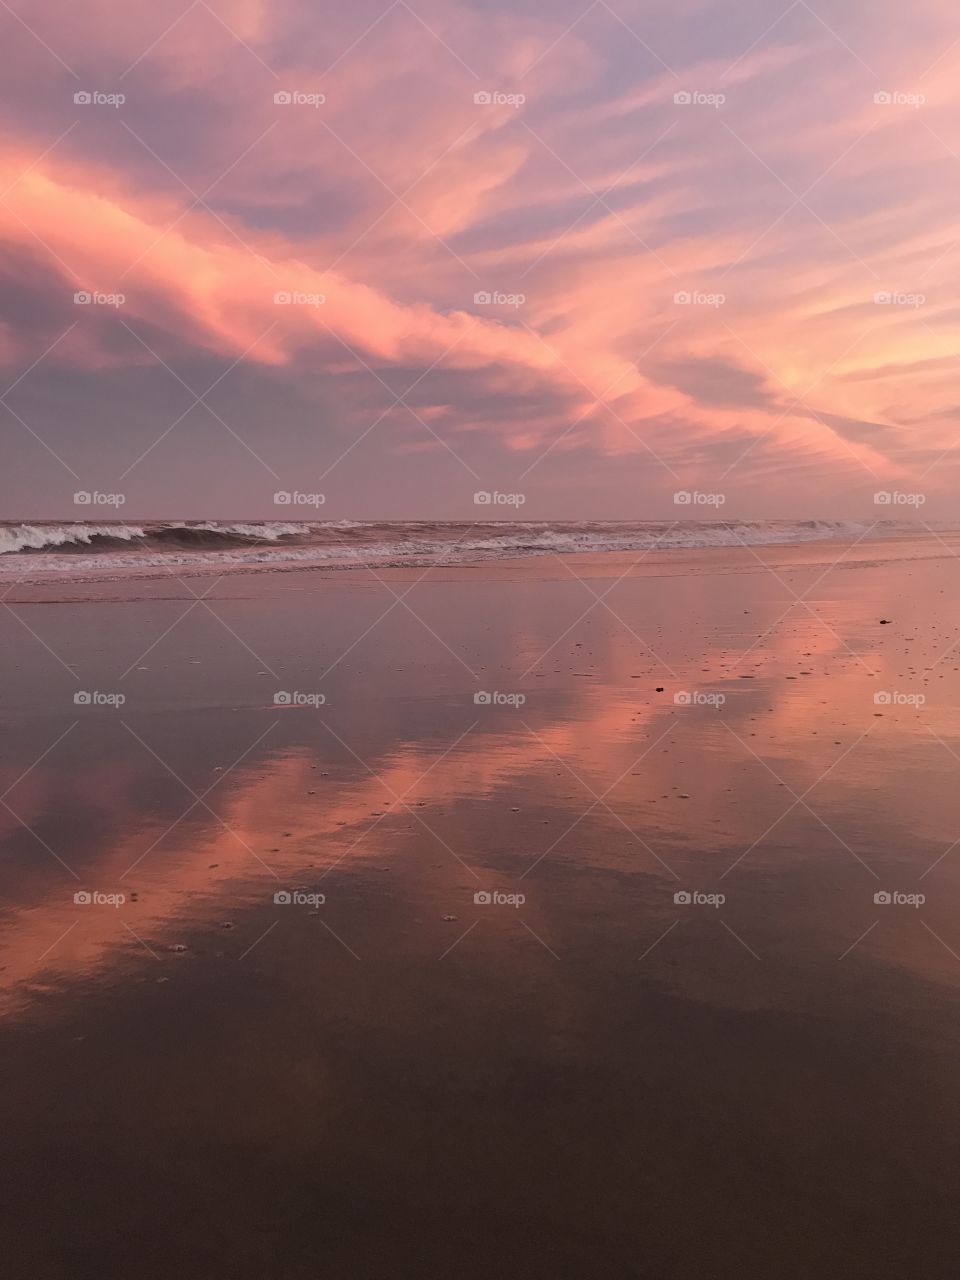 Vanilla sky sunset on the beach
